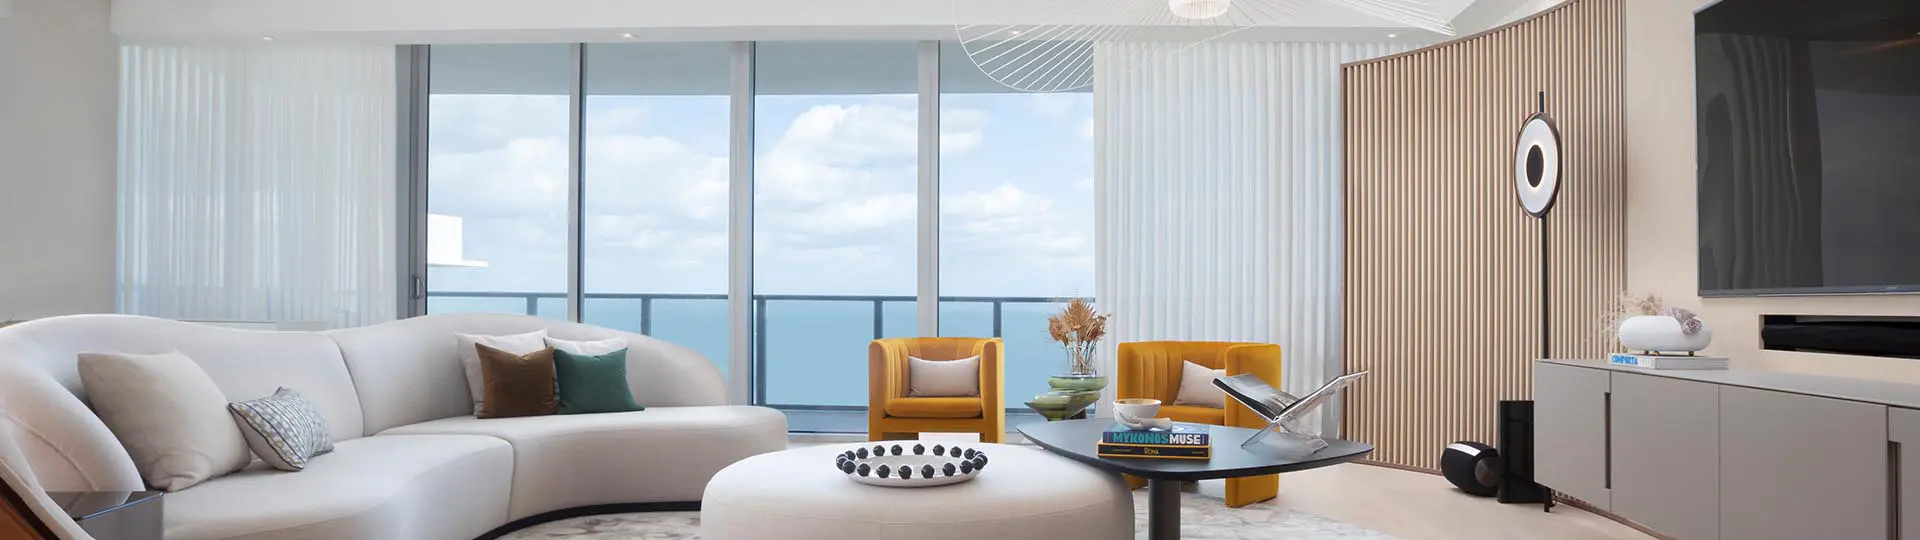 Luxury Interior Designers in Fort Lauderdale, FL